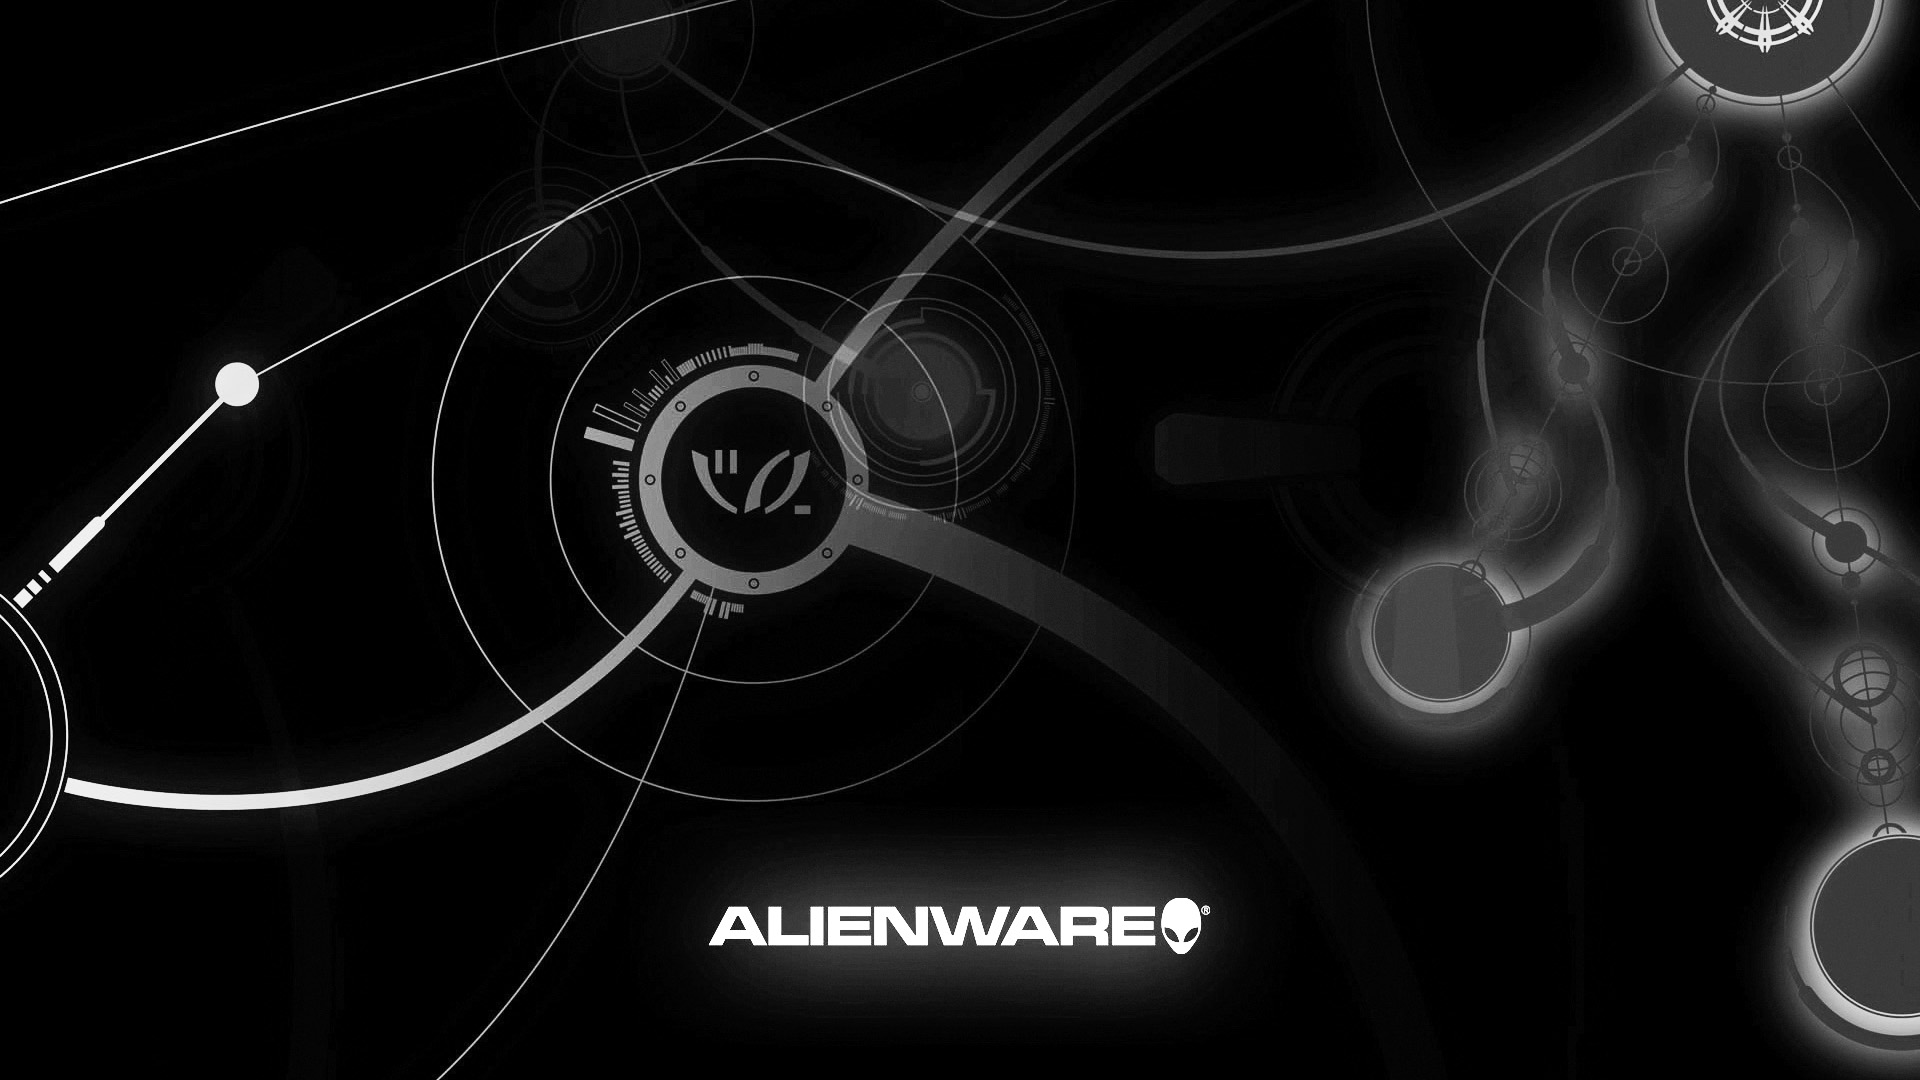 Black Alienware Wallpaper For Android Wallpaperlepi